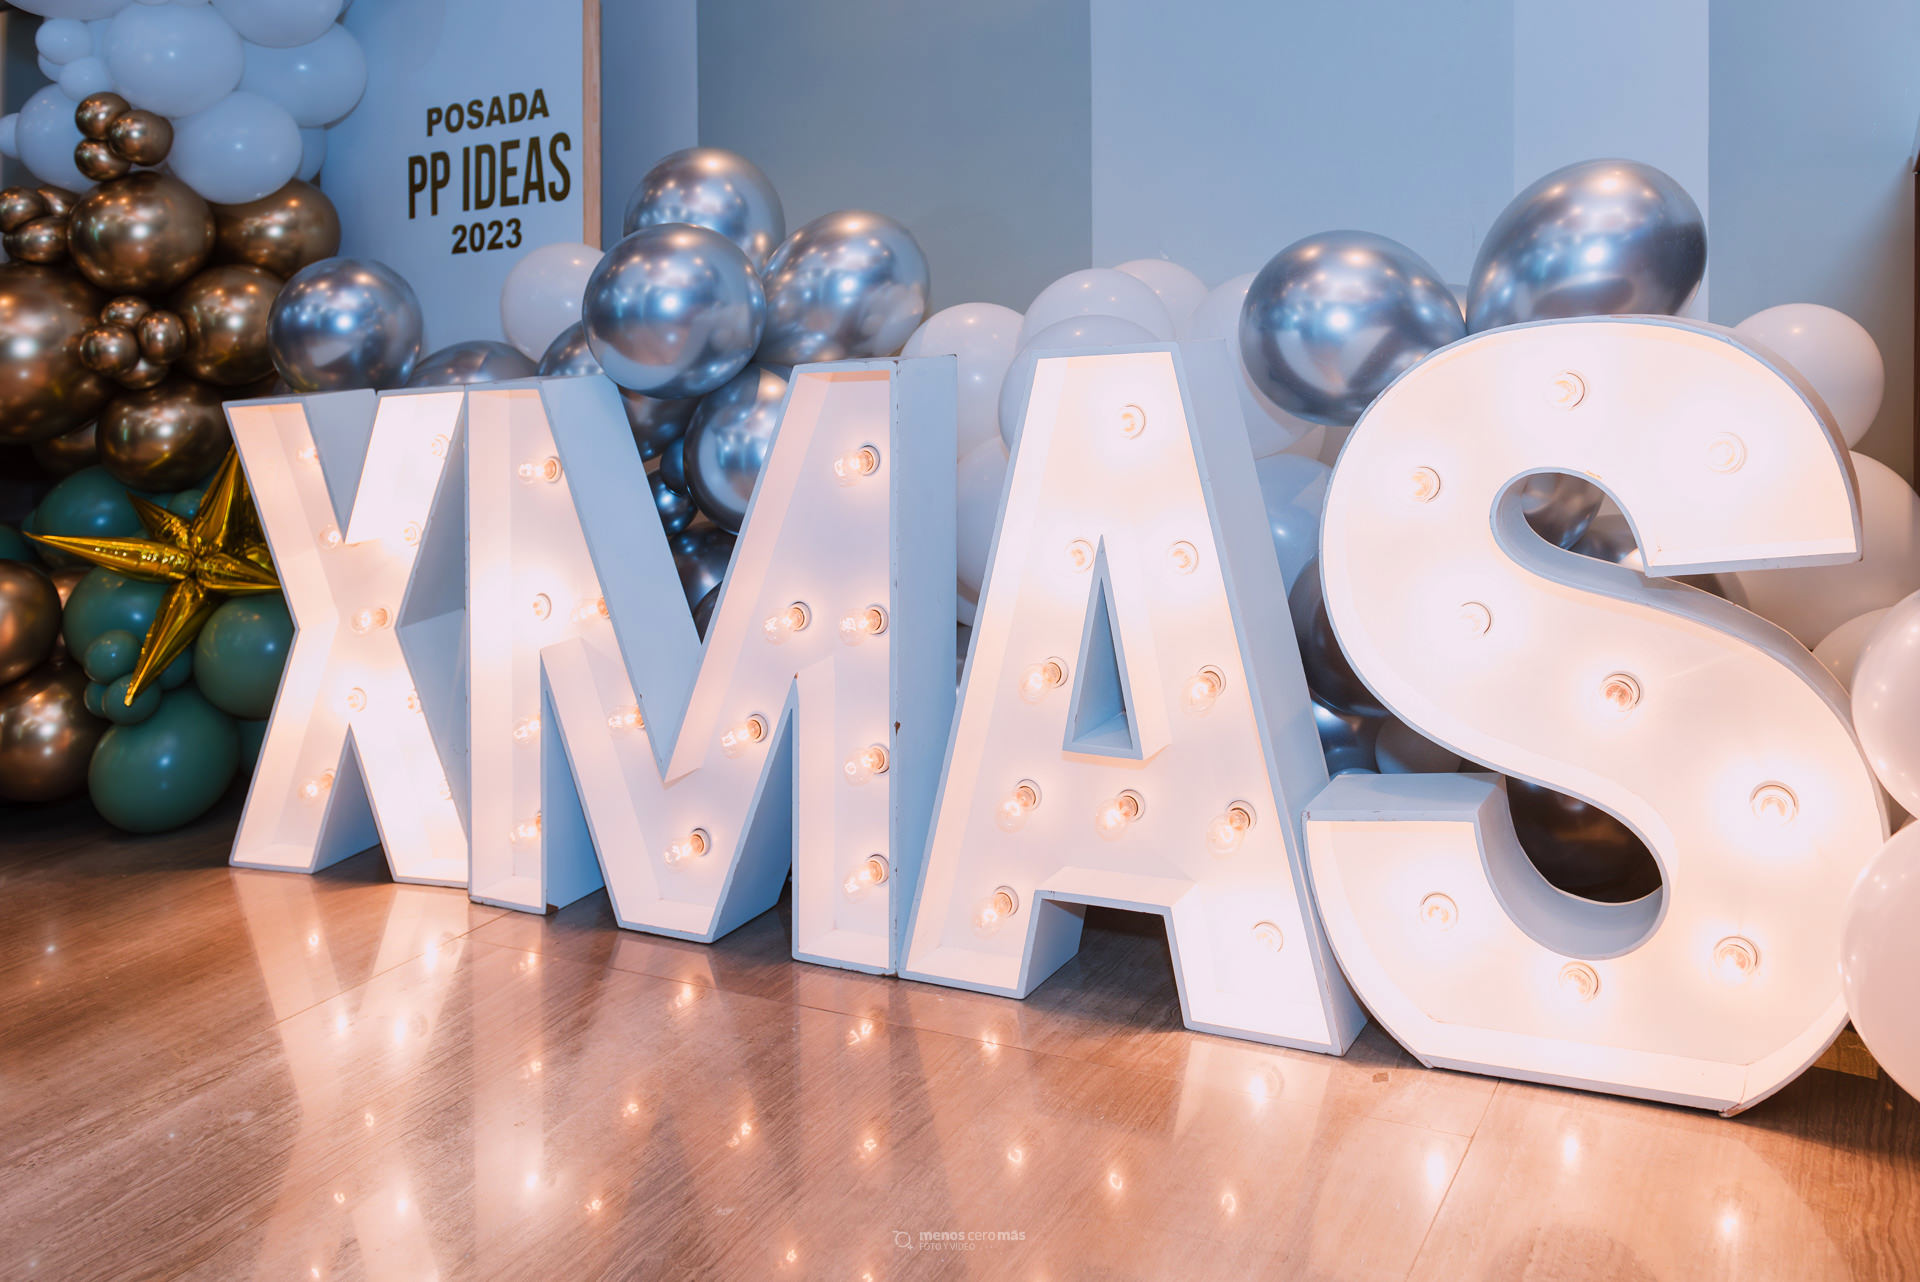 Imagen de la posada navideña 2023 de la empresa PPIdeas en San Pedro Garza García, Nuevo León. La imagen muestra letras decorativas con la palabra "xmas" iluminando y ambientando el evento.